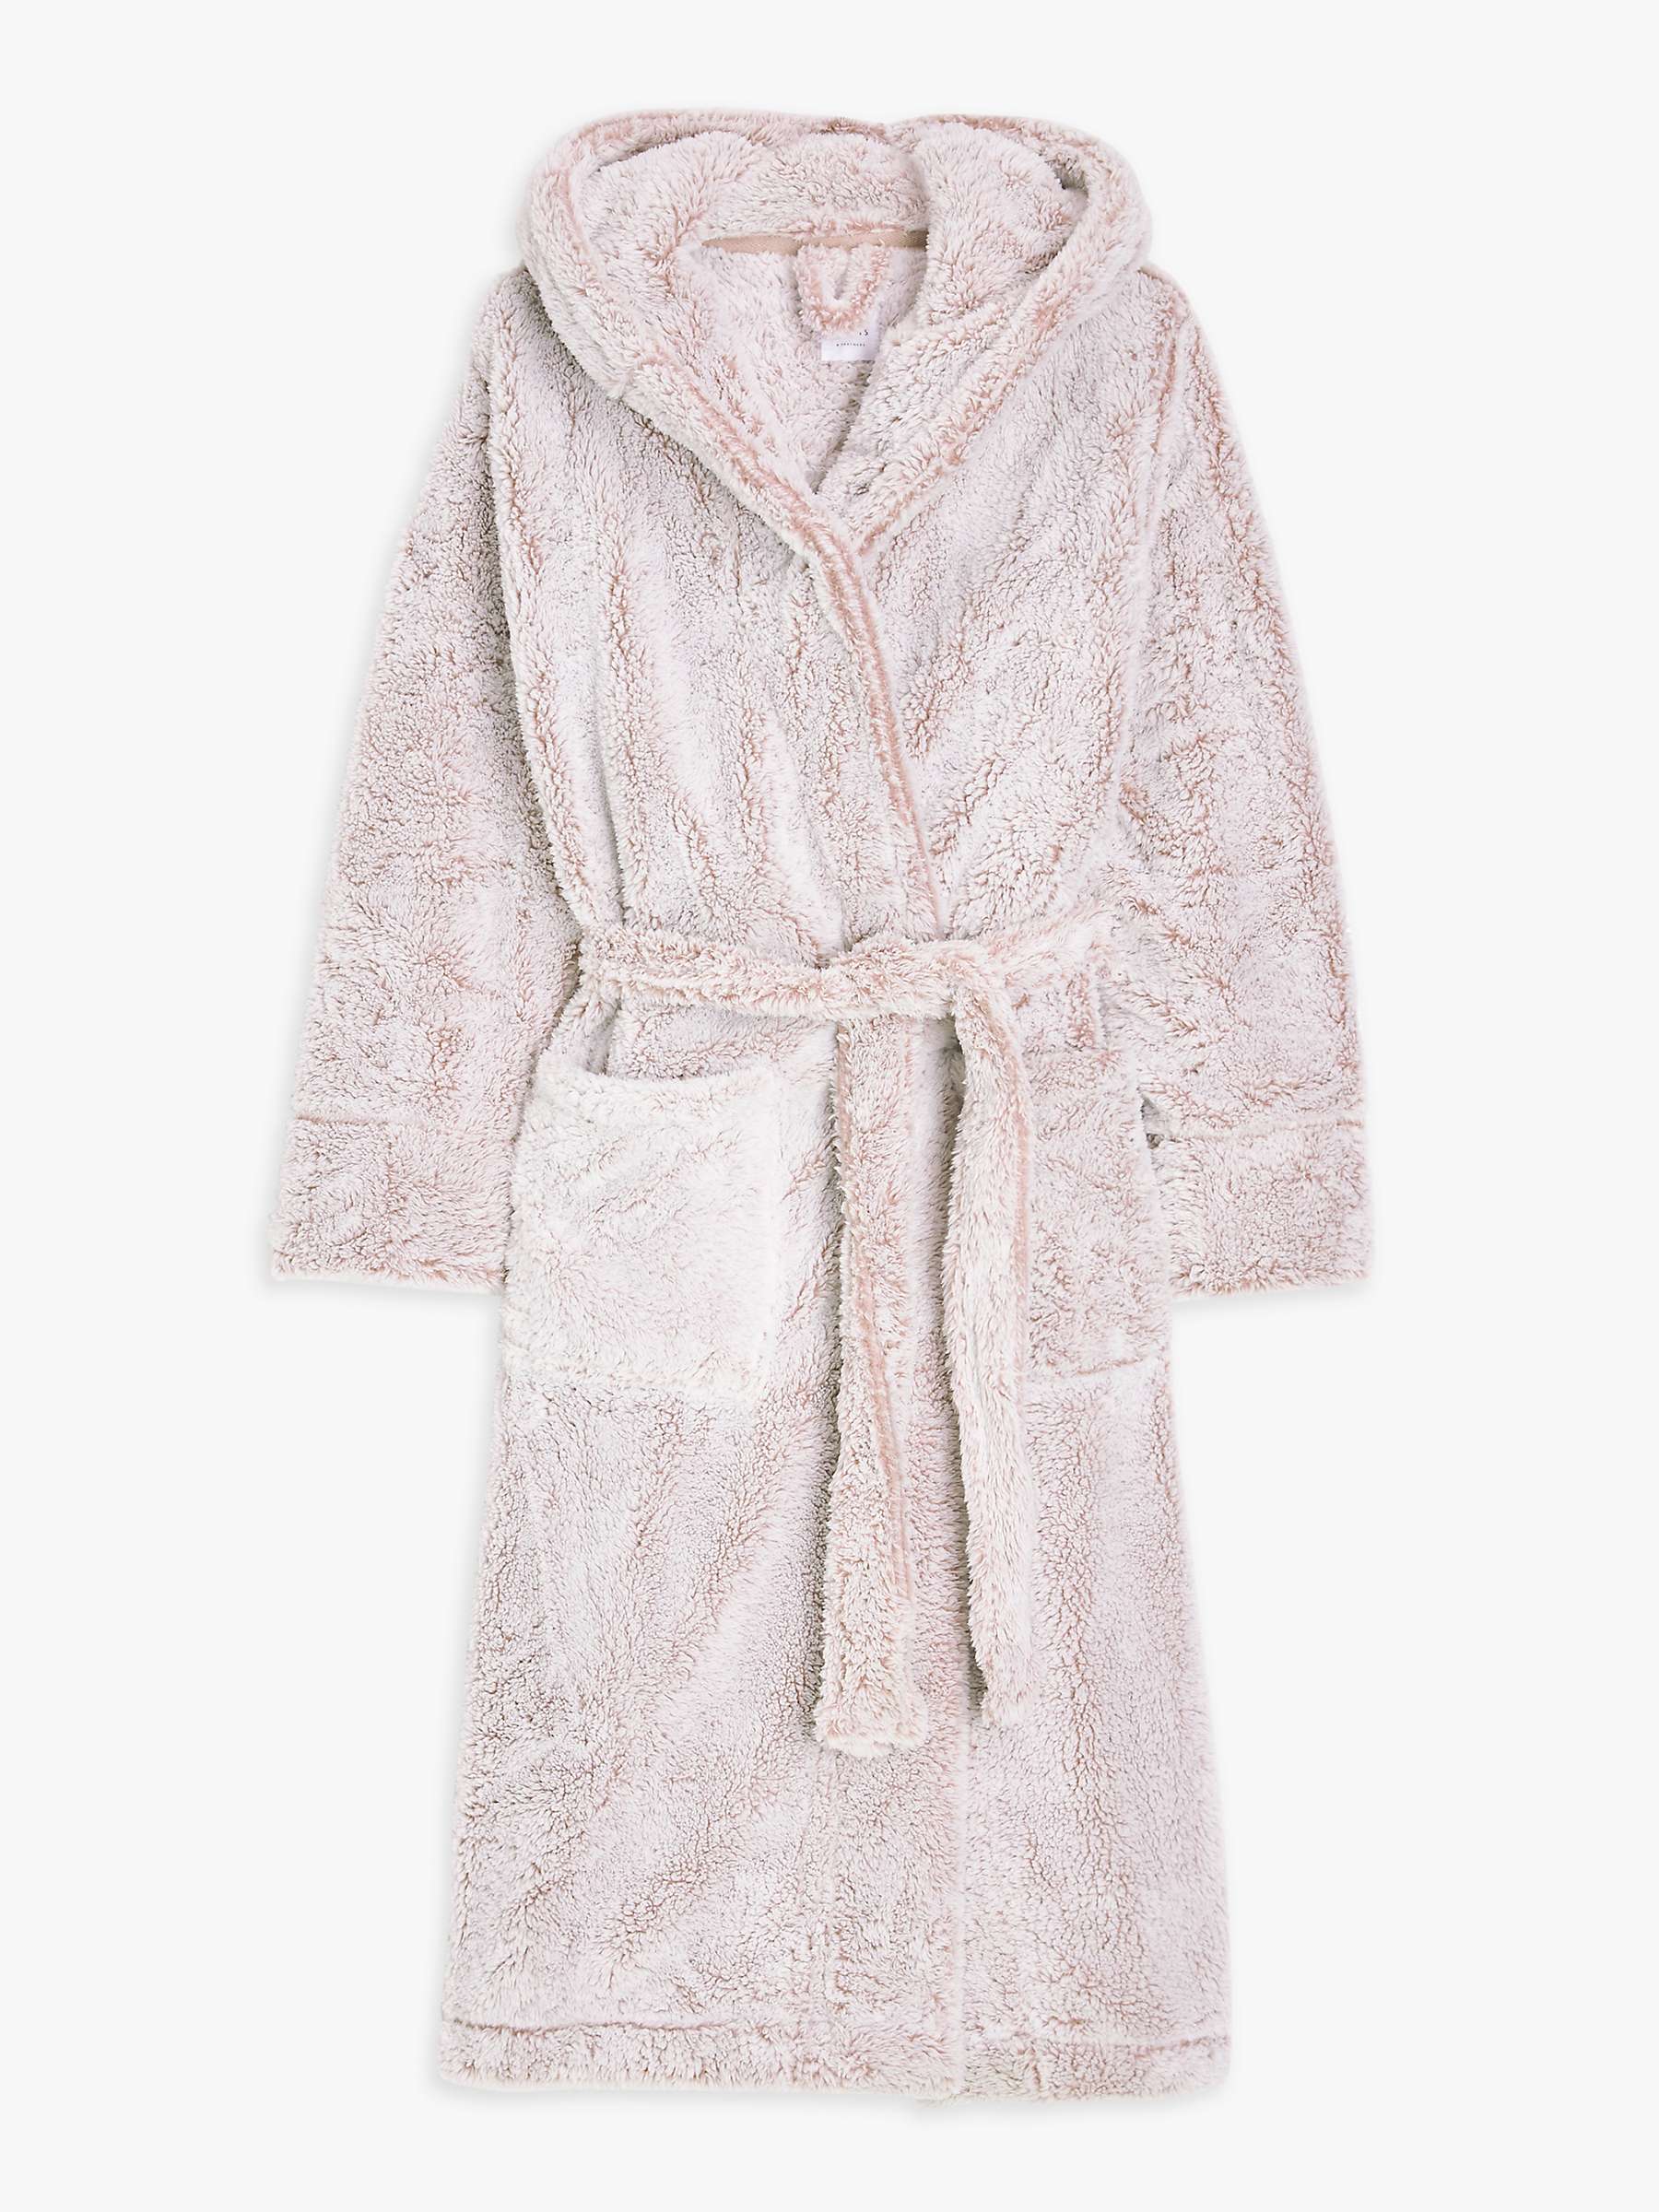 Buy John Lewis Hi Pile Fleece Robe Online at johnlewis.com